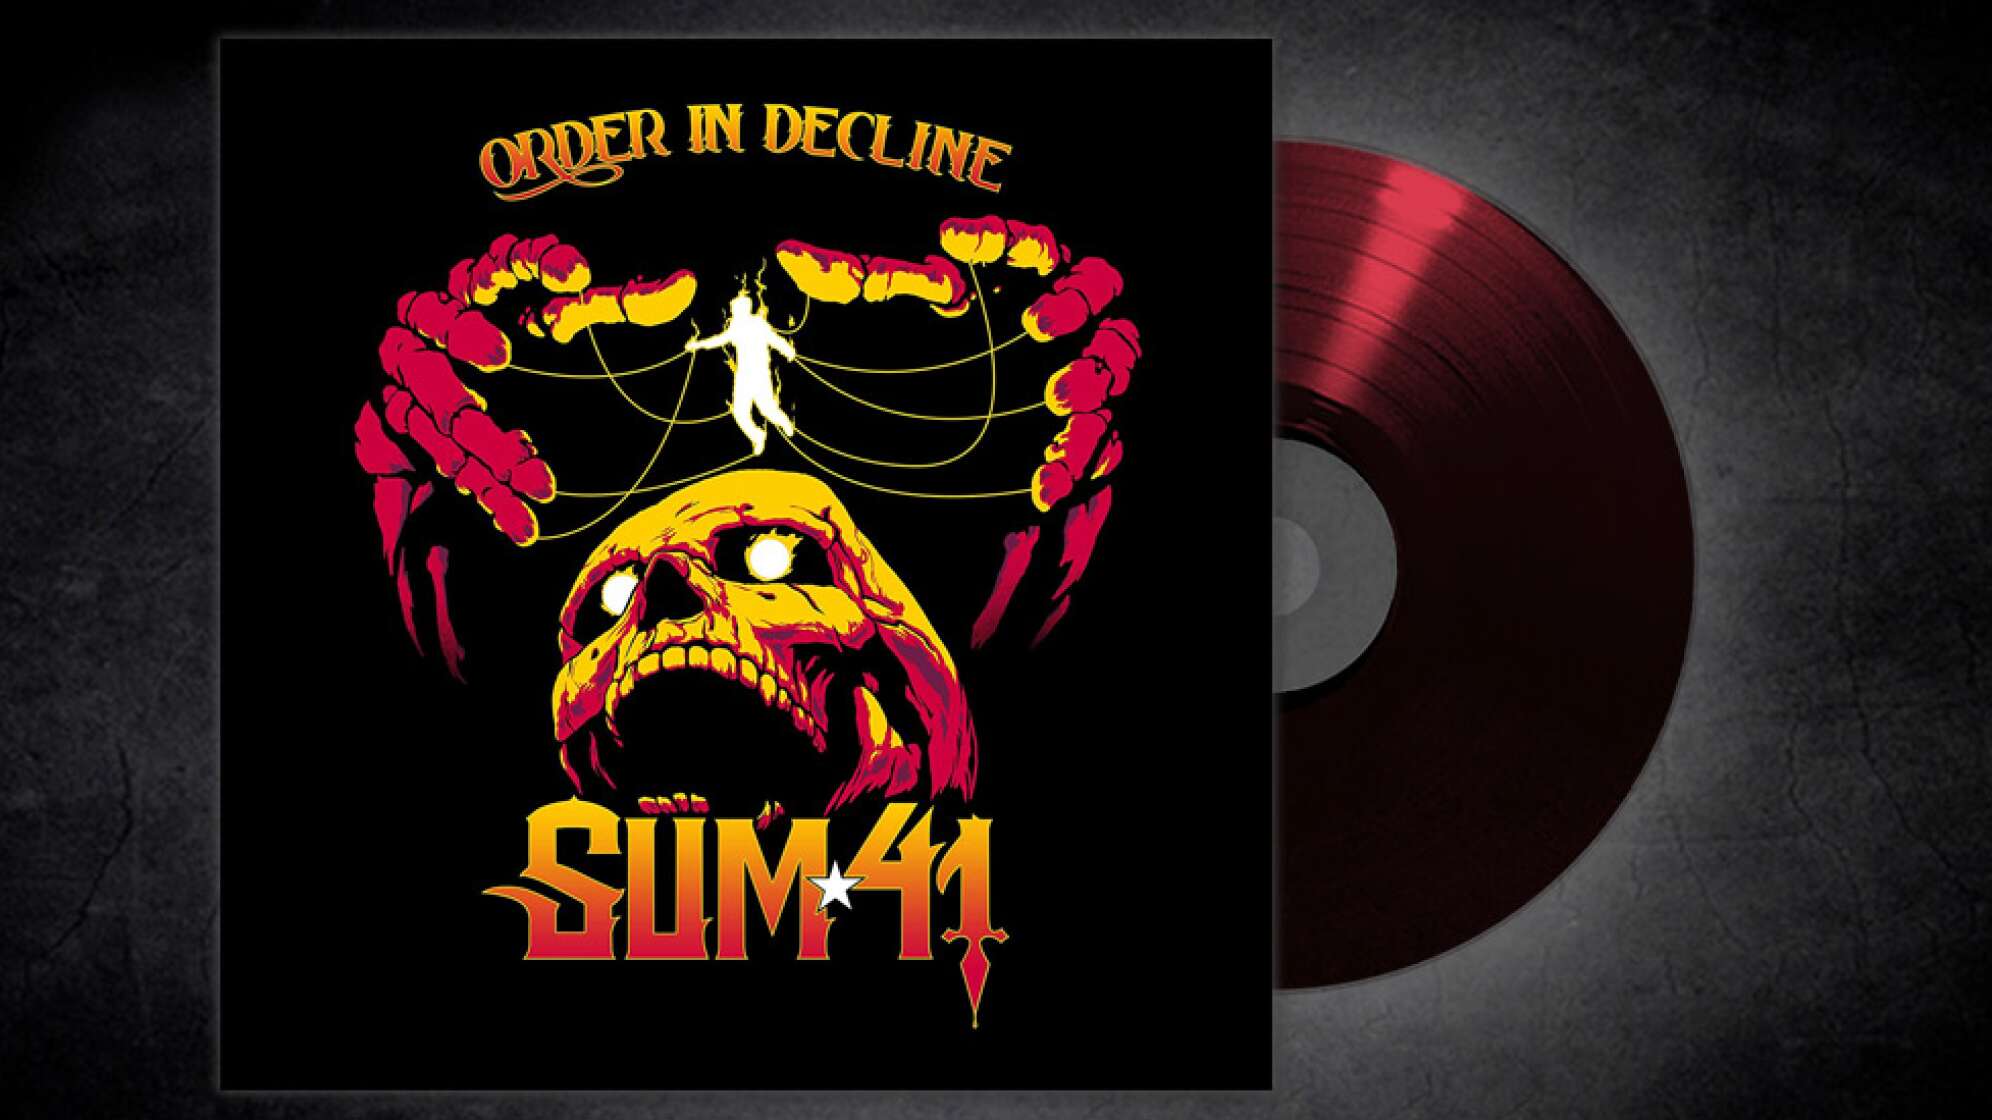 Albumcover von Sum 41 Order In Decline